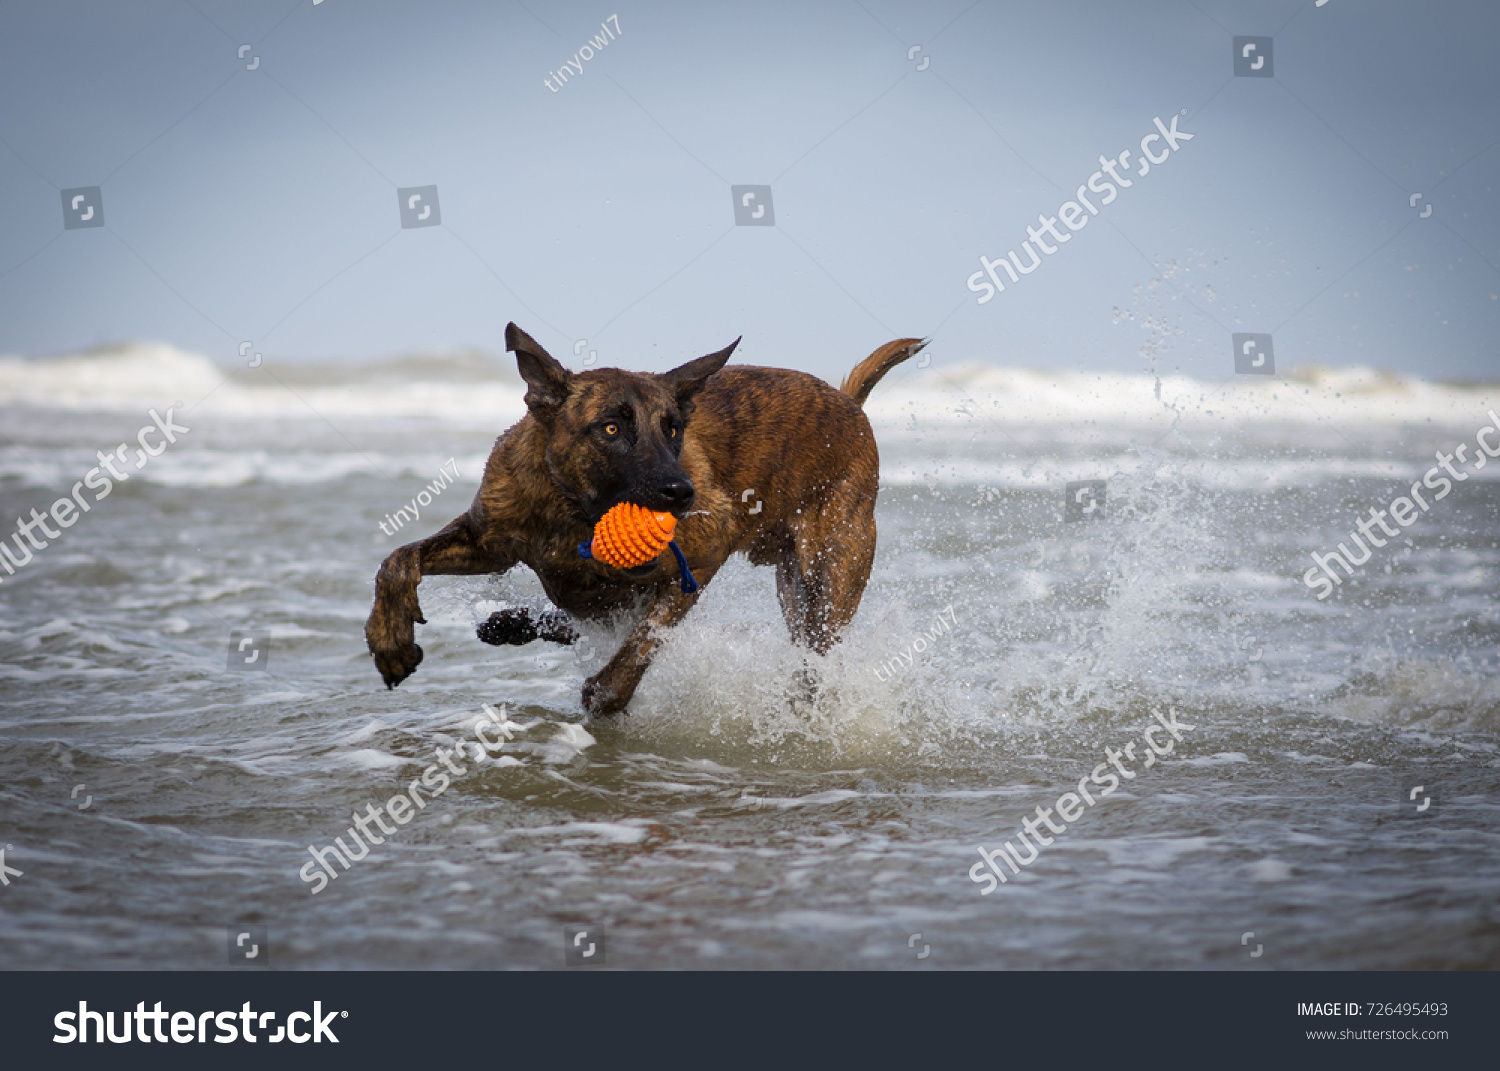 Dutch Dog In Action